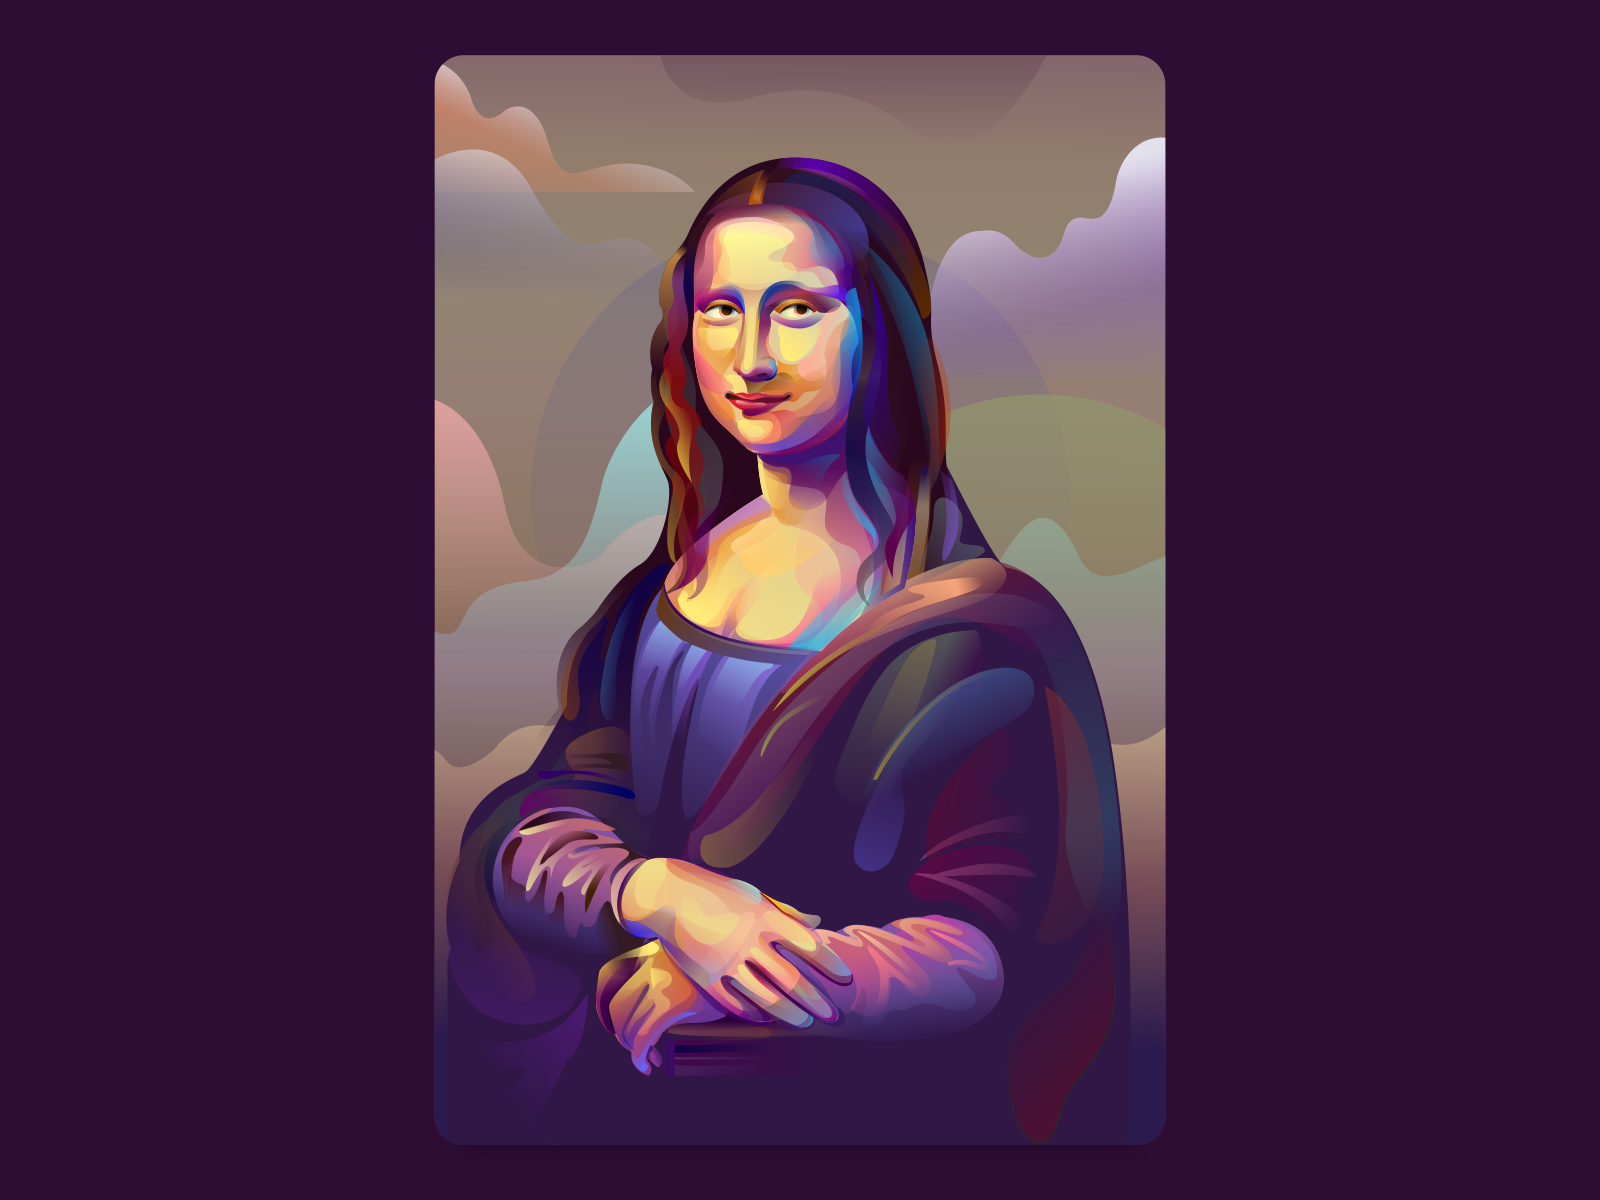 Mona Lisa by Rahul Khobragade on Dribbble